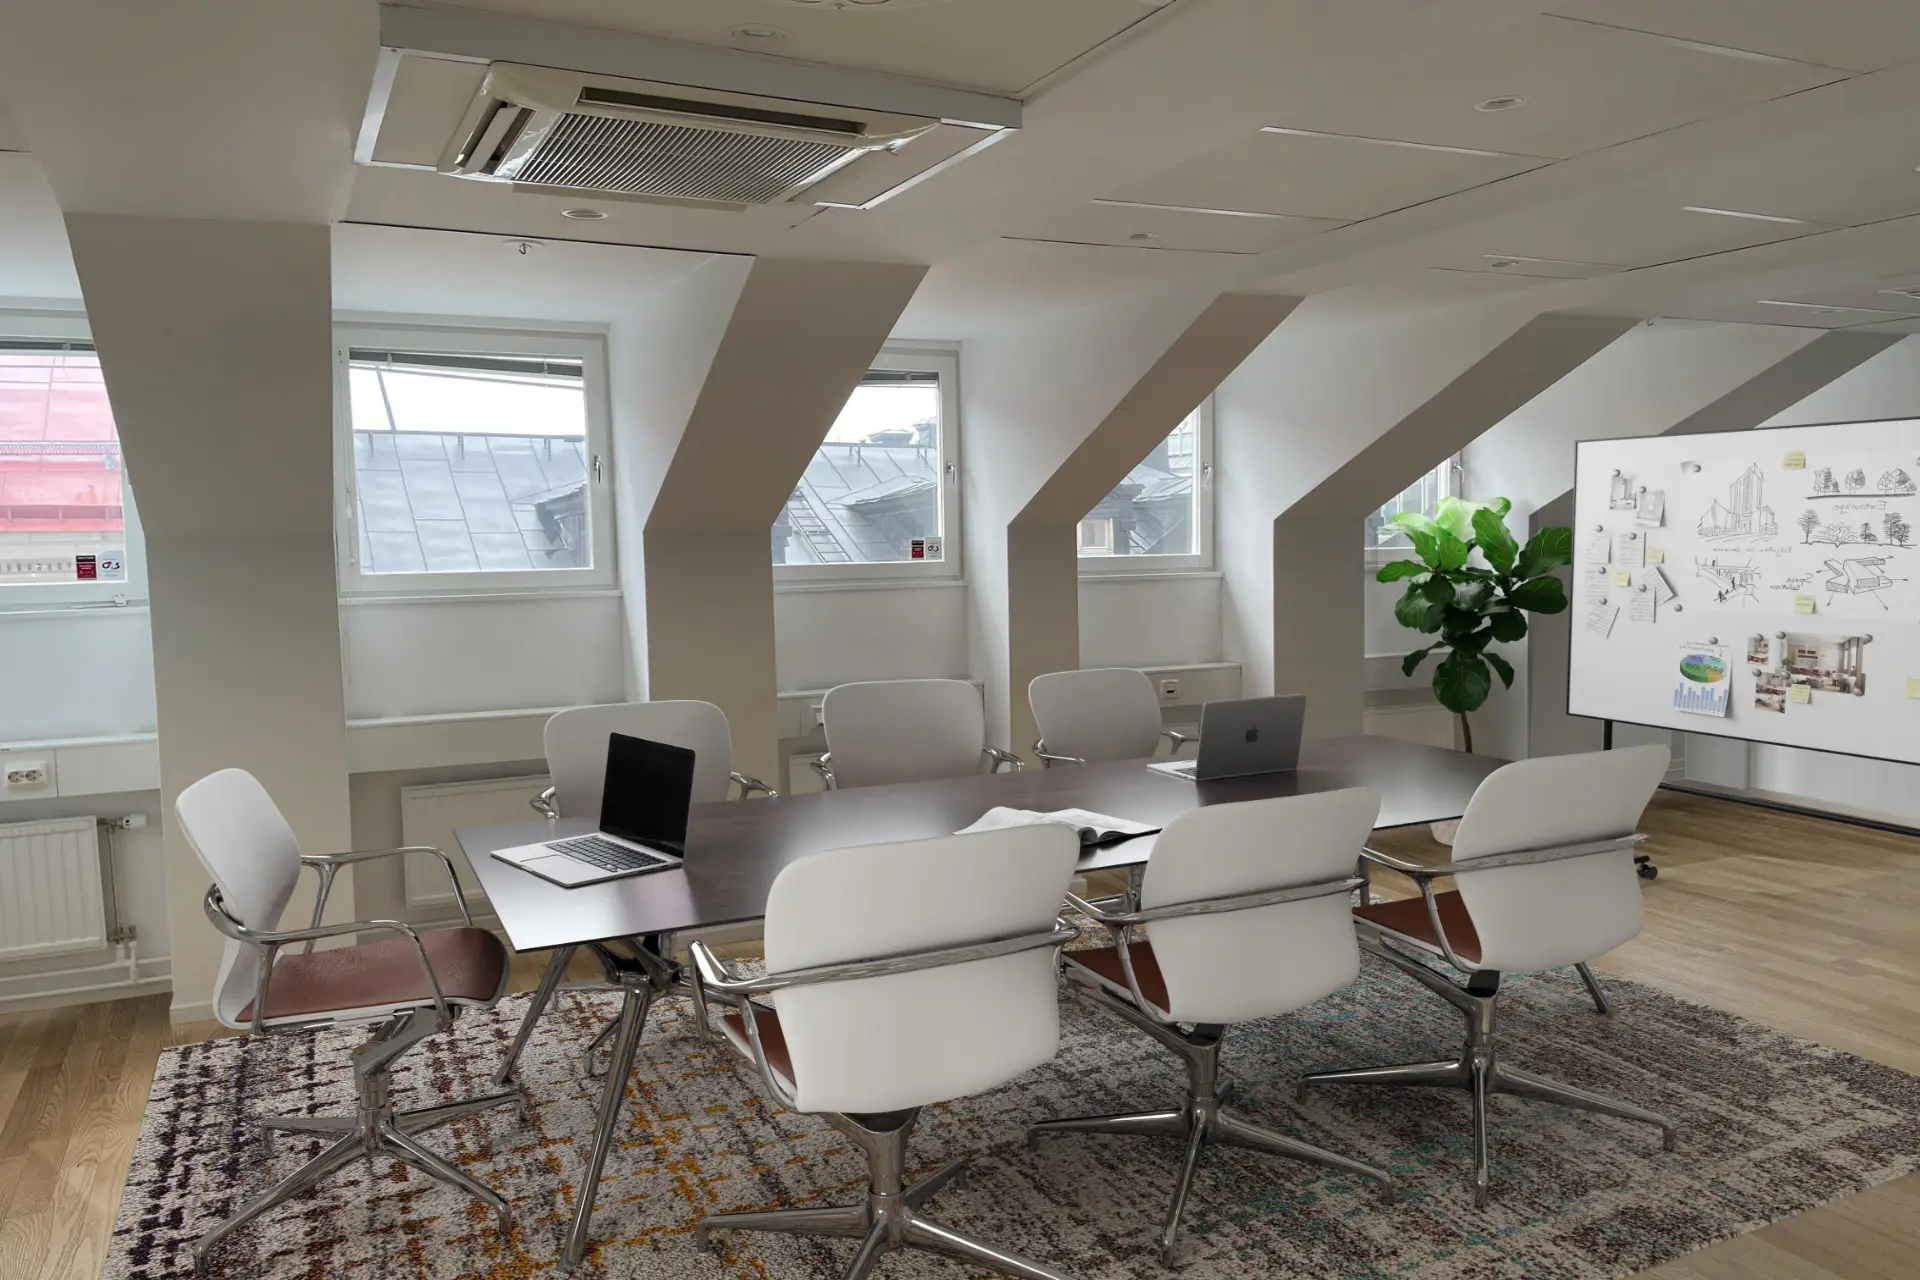 Kontorsmötesrum med sluttande tak, med ett stort mörkt bord, vita stolar, bärbara datorer och dekorativa växter, med gott om naturligt ljus från takfönster.